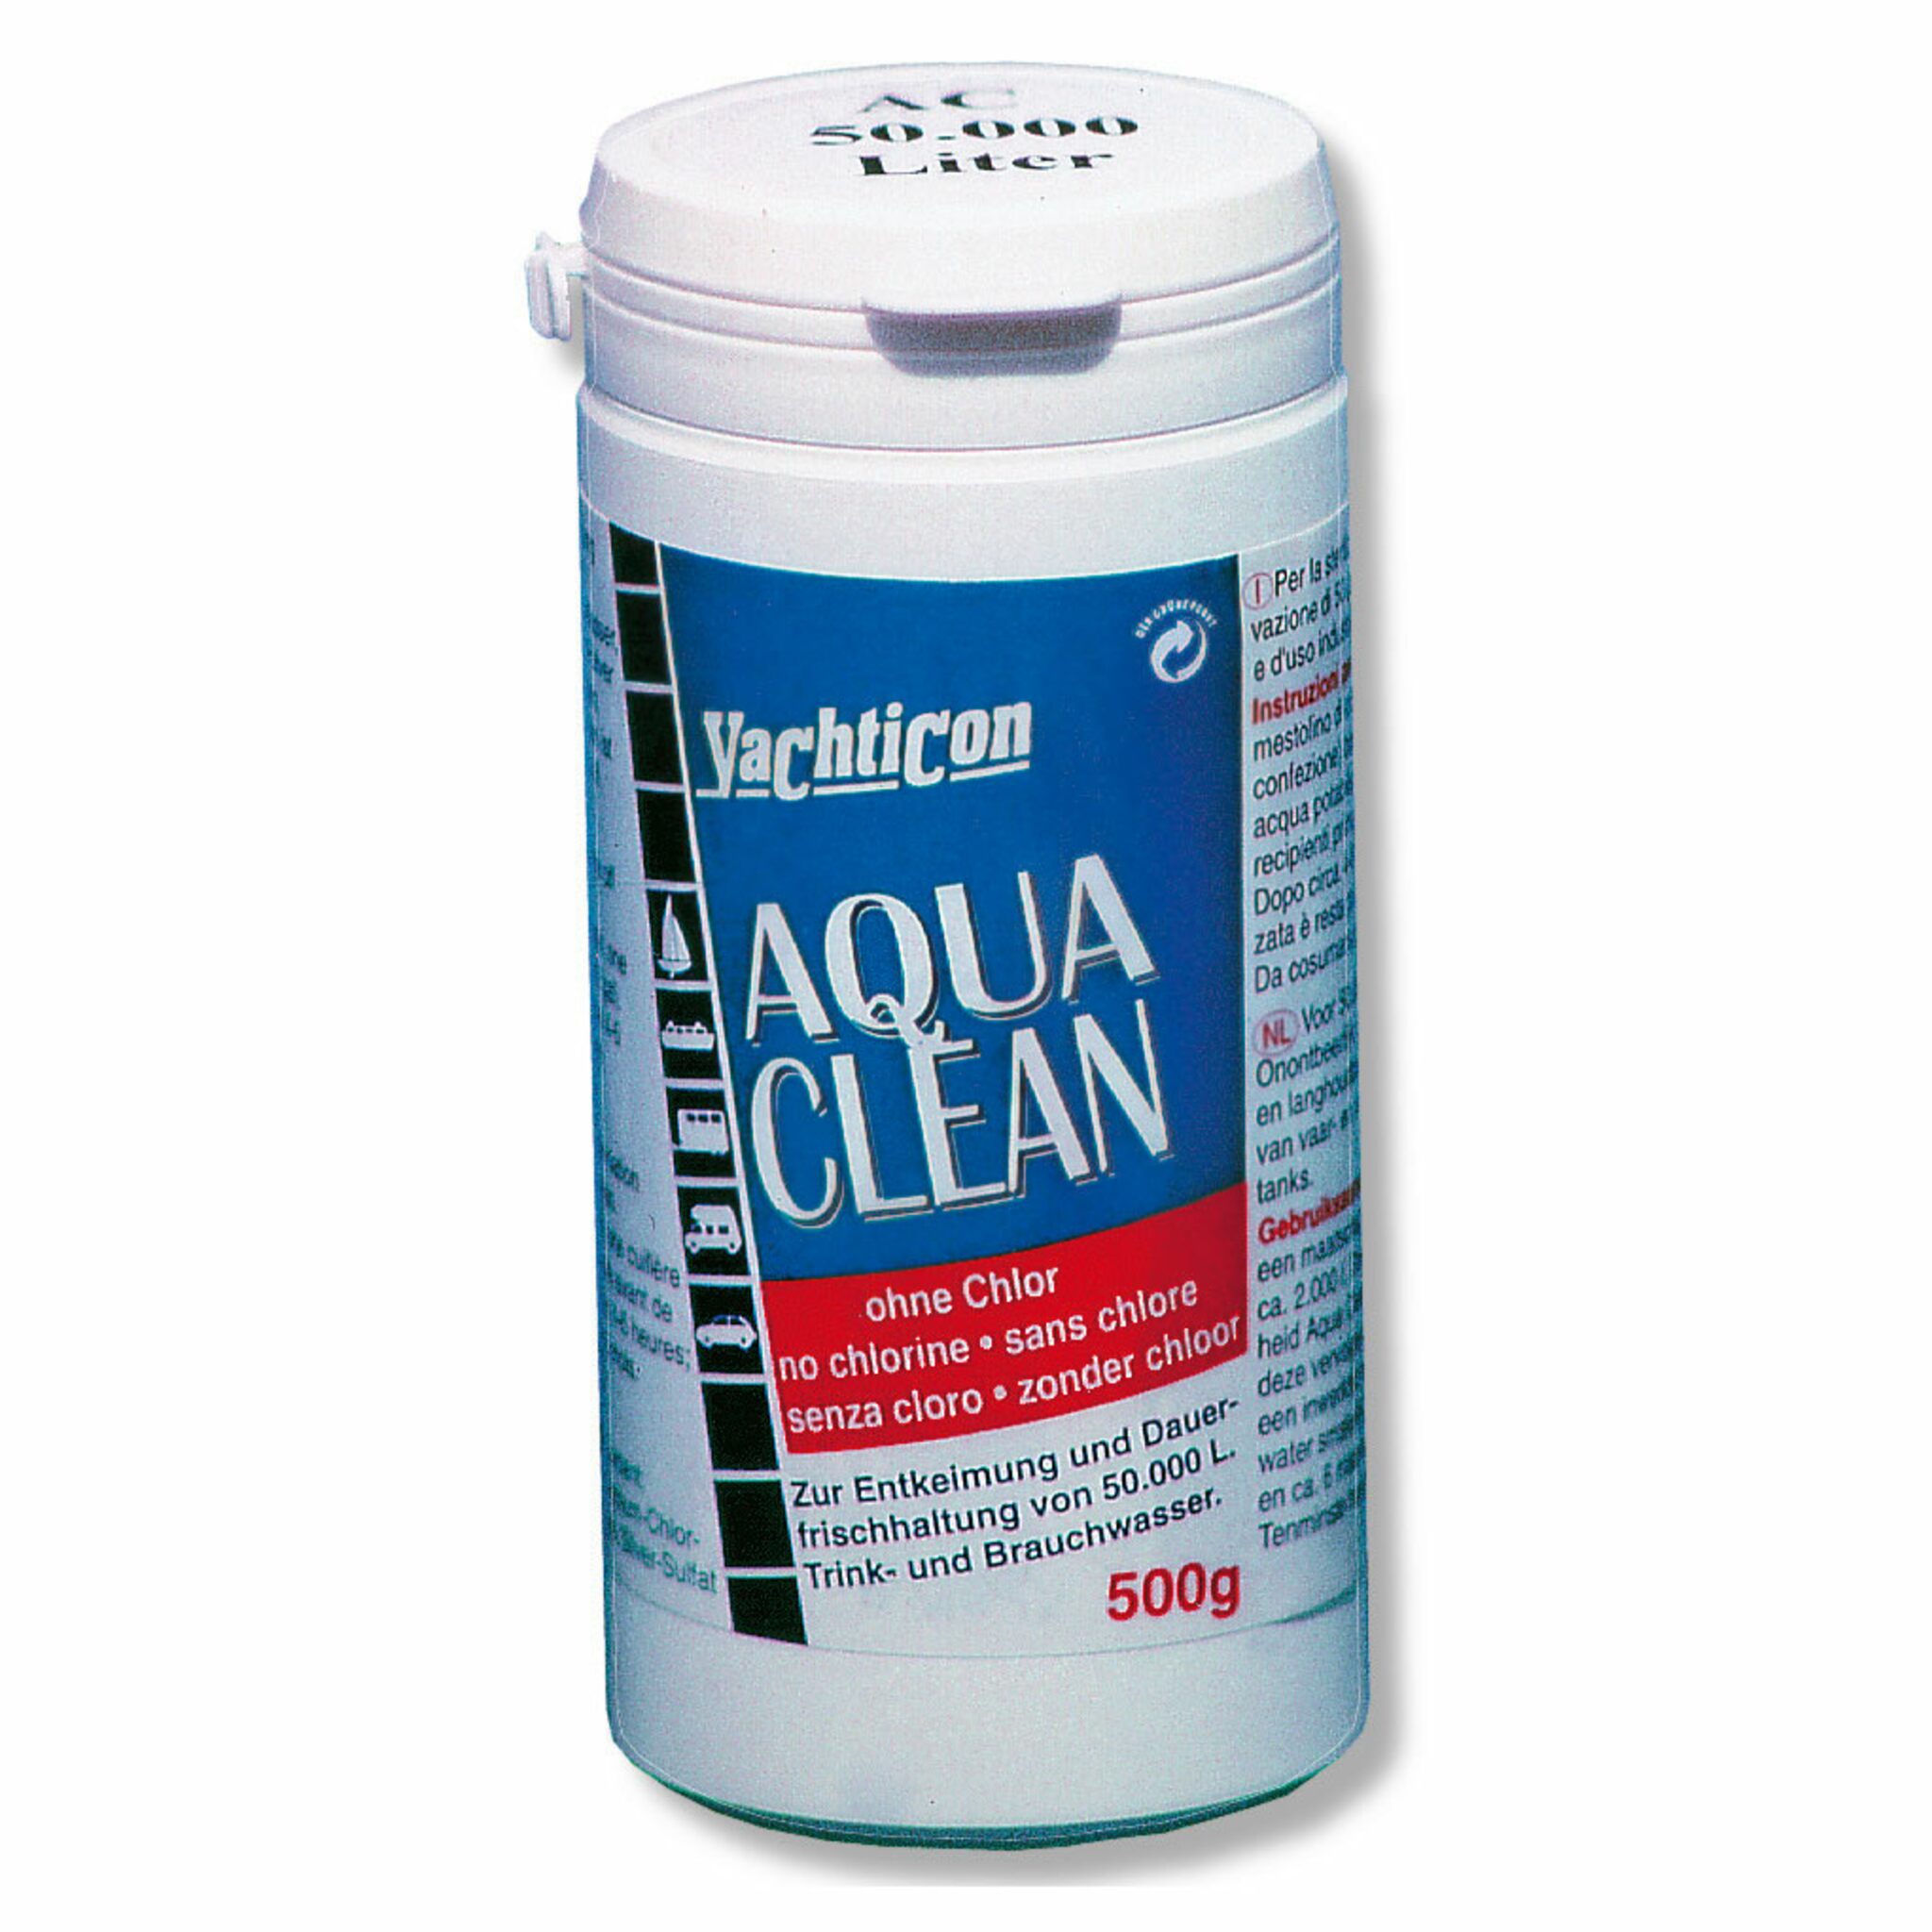 Yachticon Aqua Clean 500 g Pulver, reicht für 50000 l